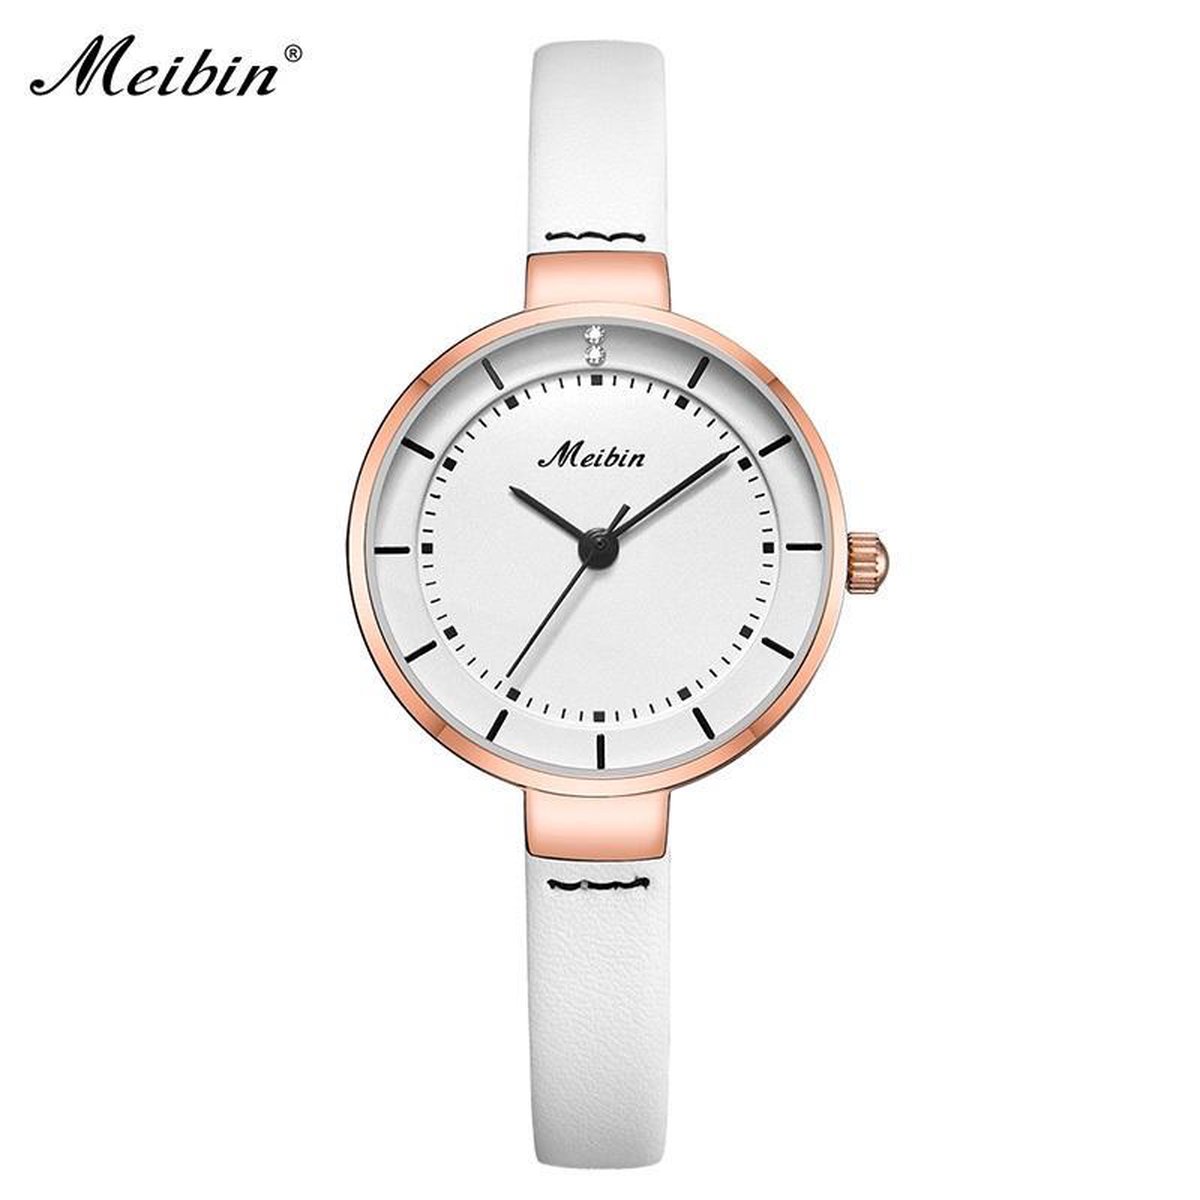 Longbo - Meibin - Dames Horloge - Wit/Rosé - 28mm